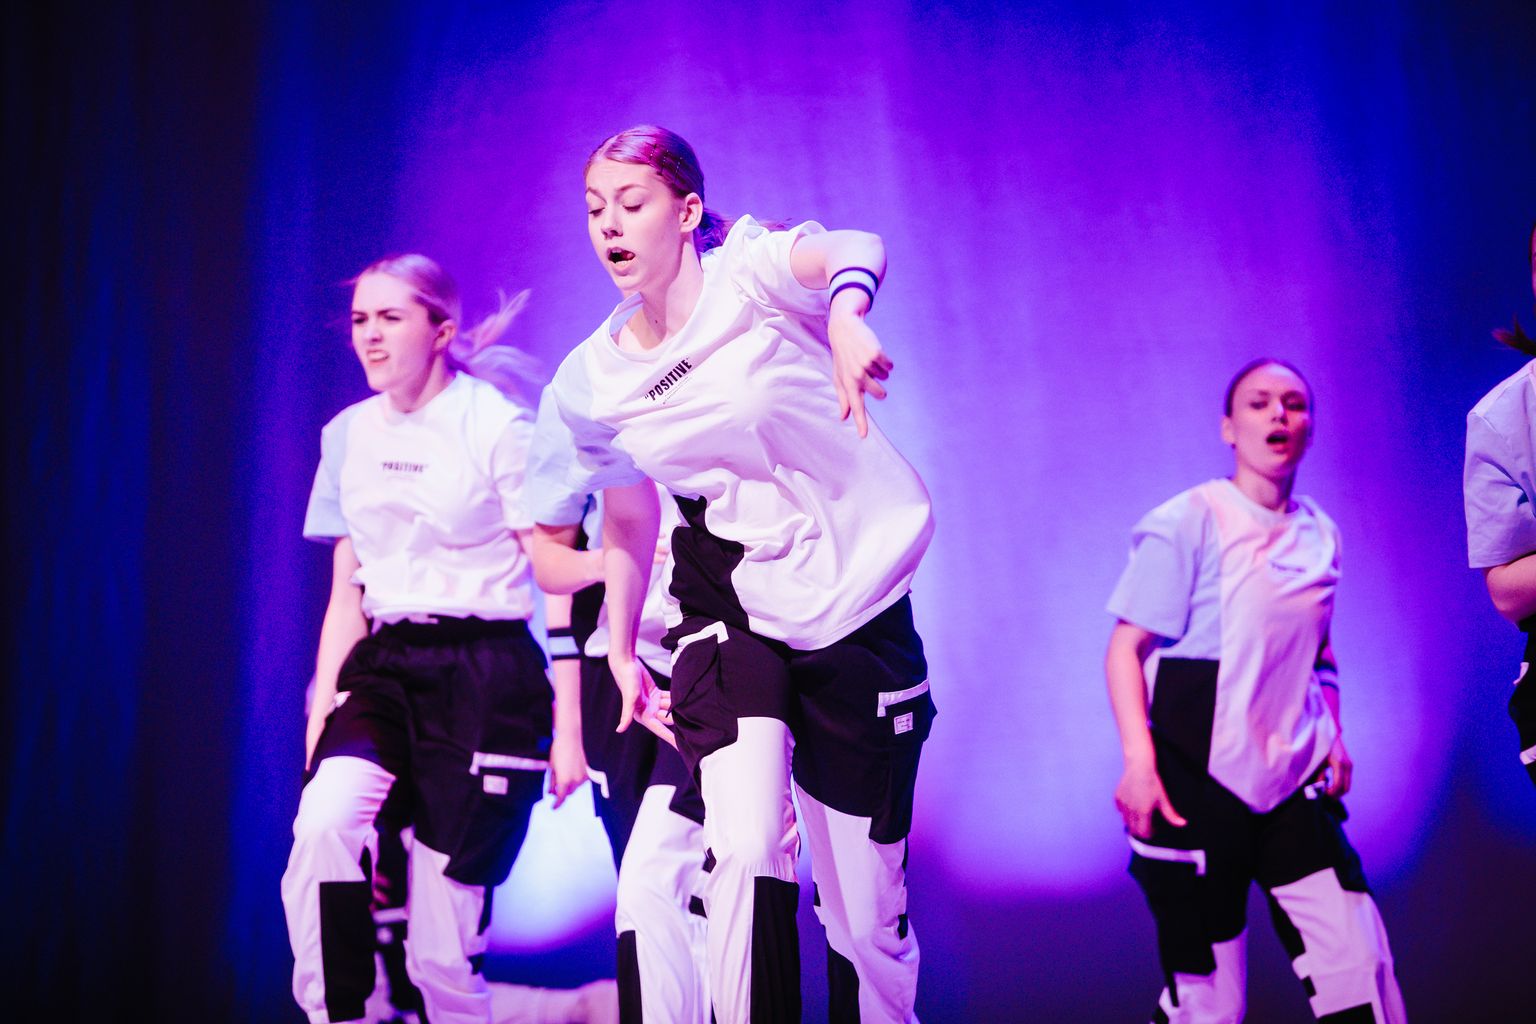 Koolitantsu piirkondlikul tantsupäeval tulevad lavale Pärnu-, Saare-, Lääne- ja Hiiumaa tantsijad.